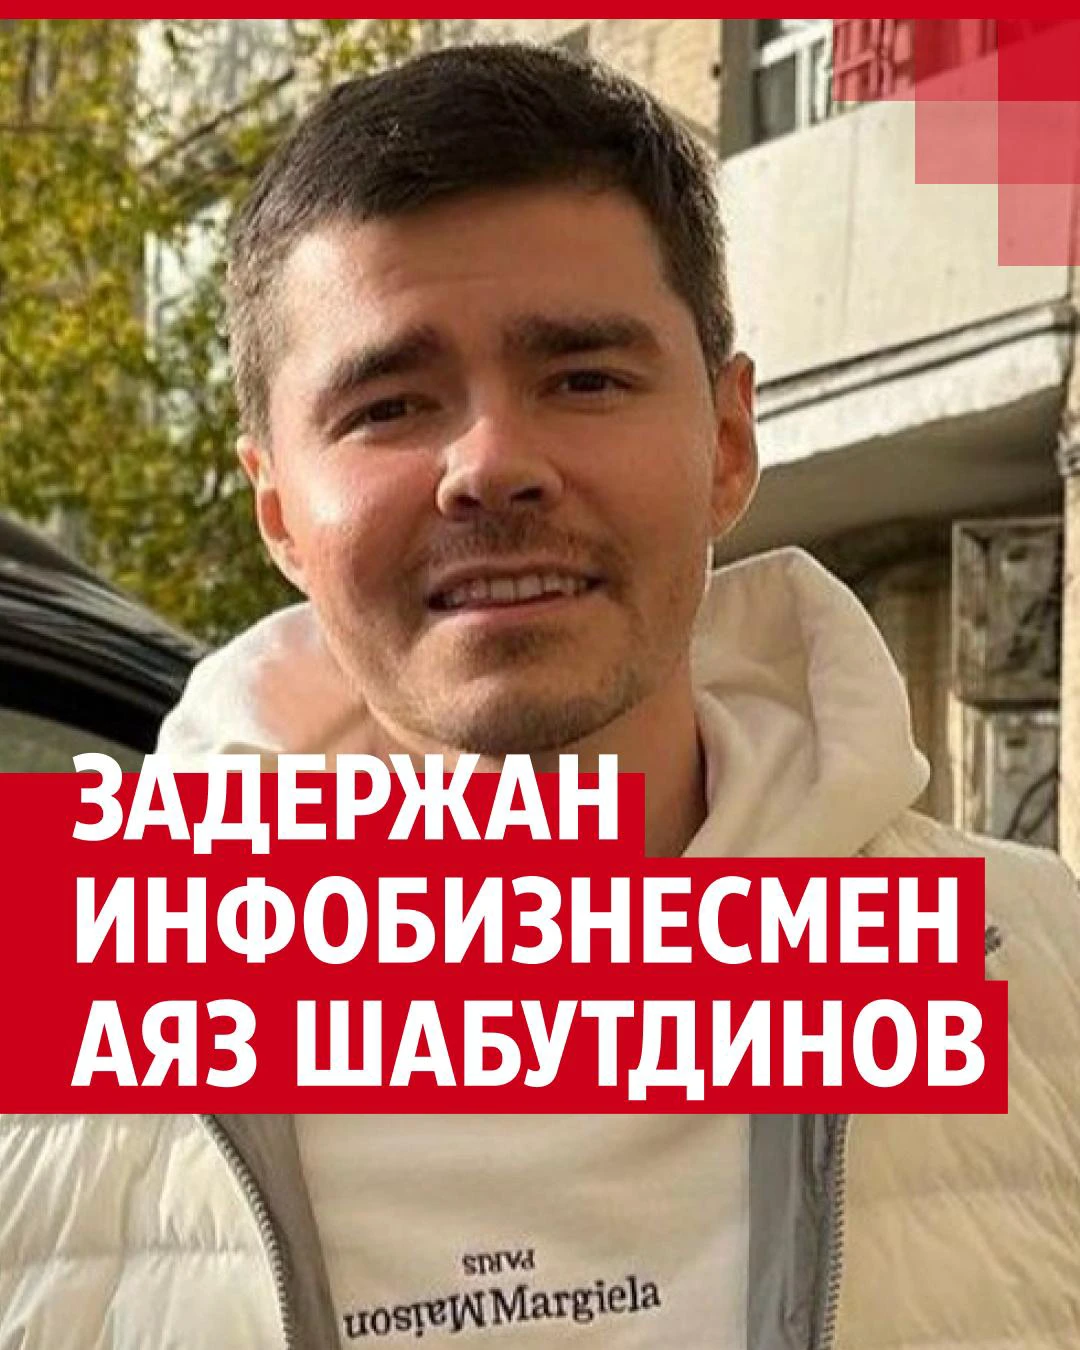 «Отец инфоцыганства»: почему задержали Аяза Шабутдинова и кто это